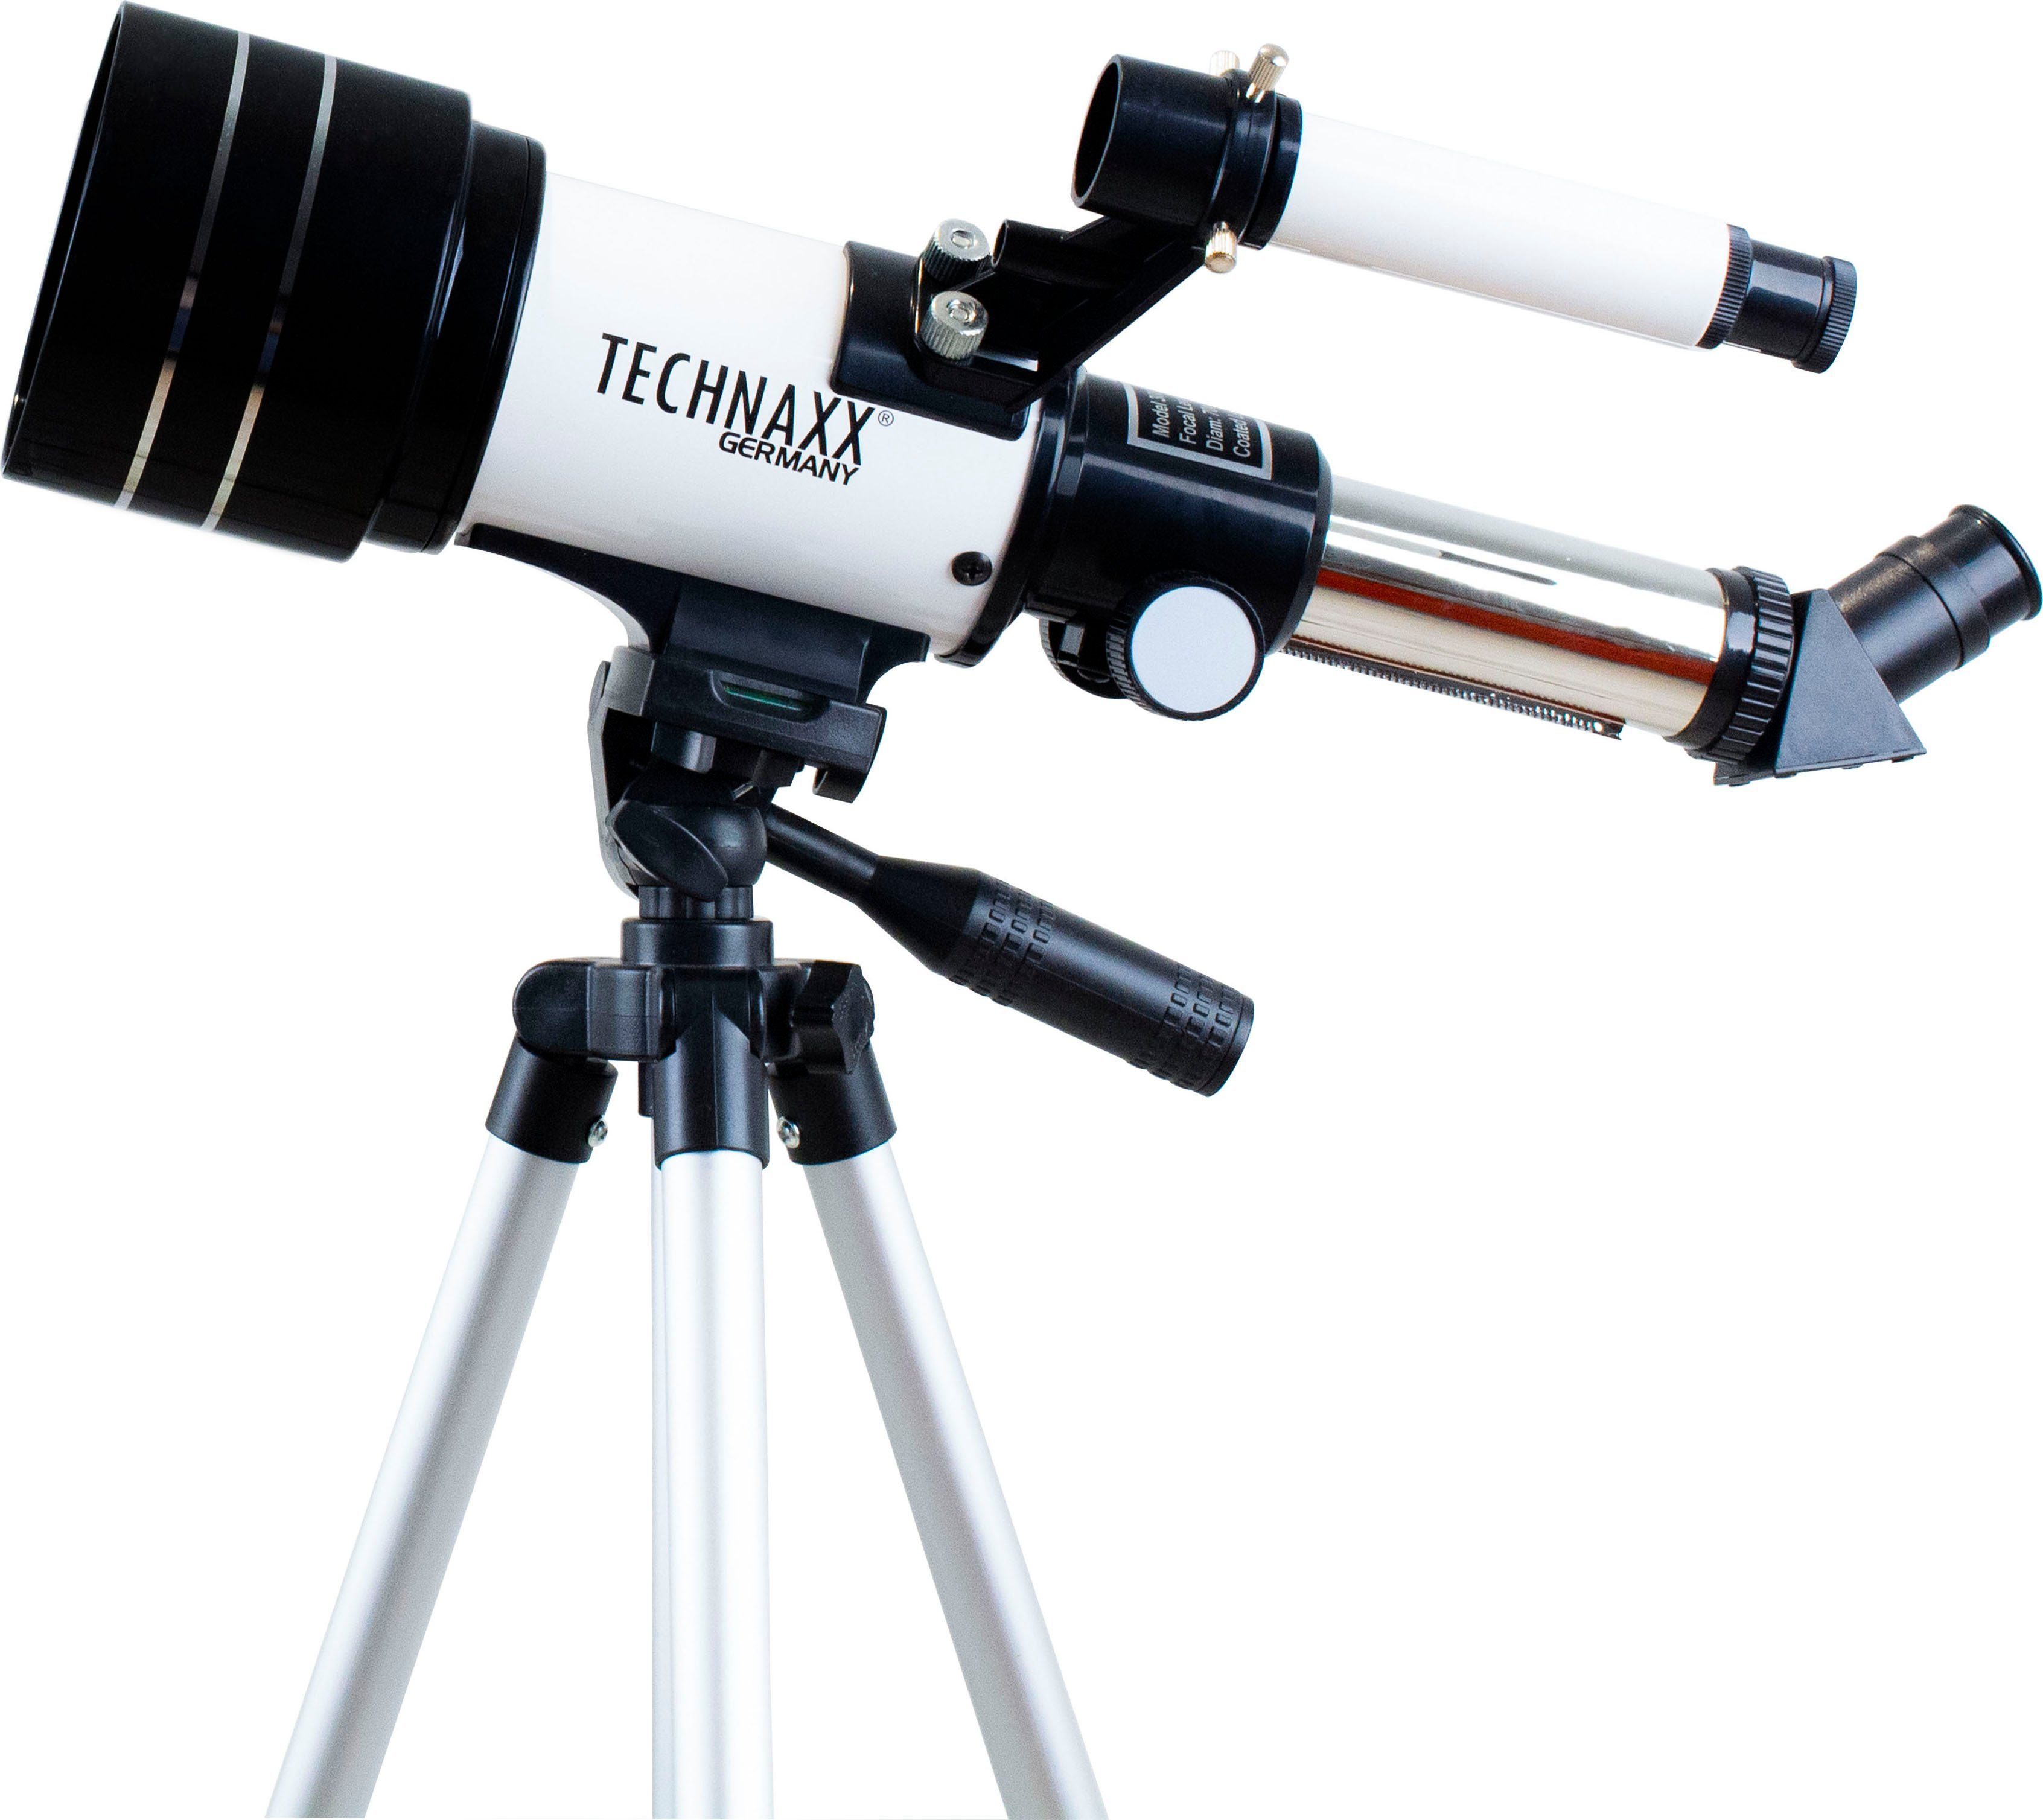 Technaxx Teleskop 70/300 TX-175, Die Barlowlinse verdreifacht die  Vergrößerung, ideal für die Sternenfotographie